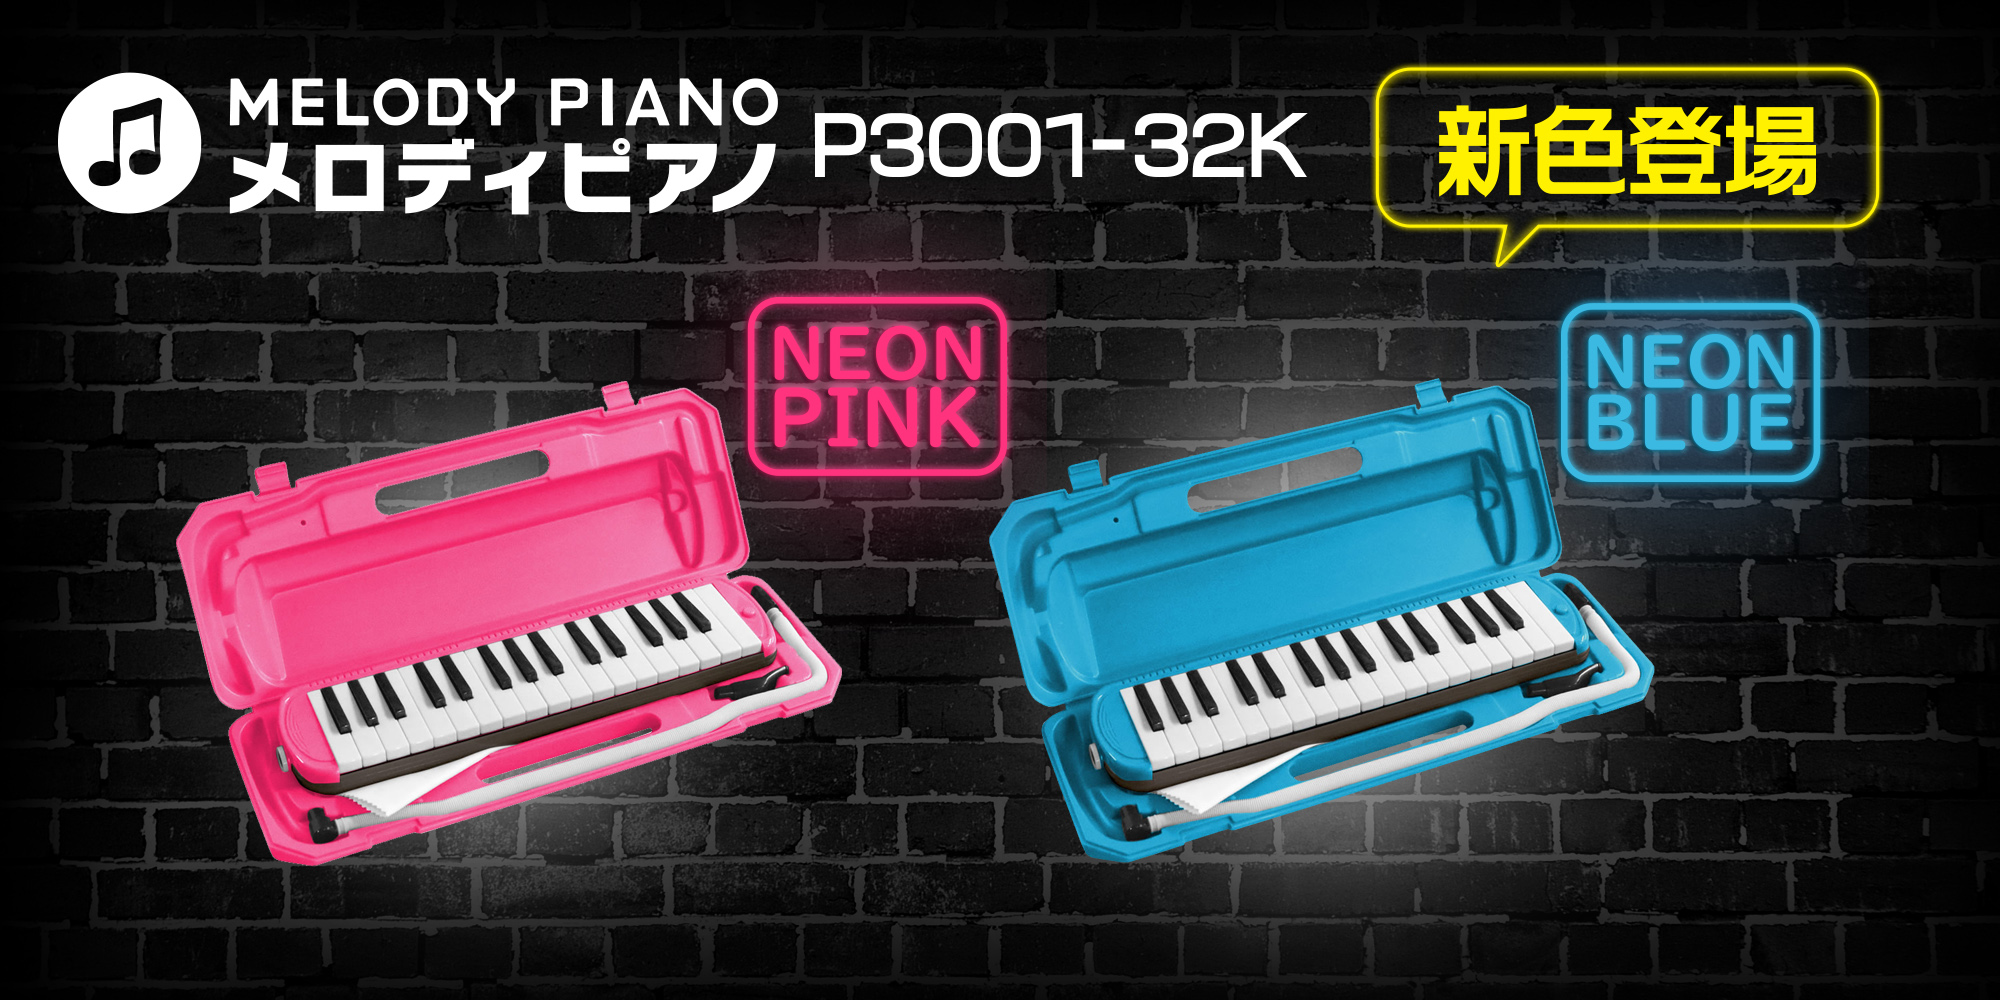 市場 KC メロディピアノ P3001-32k NEON 鍵盤ハーモニカ PINK